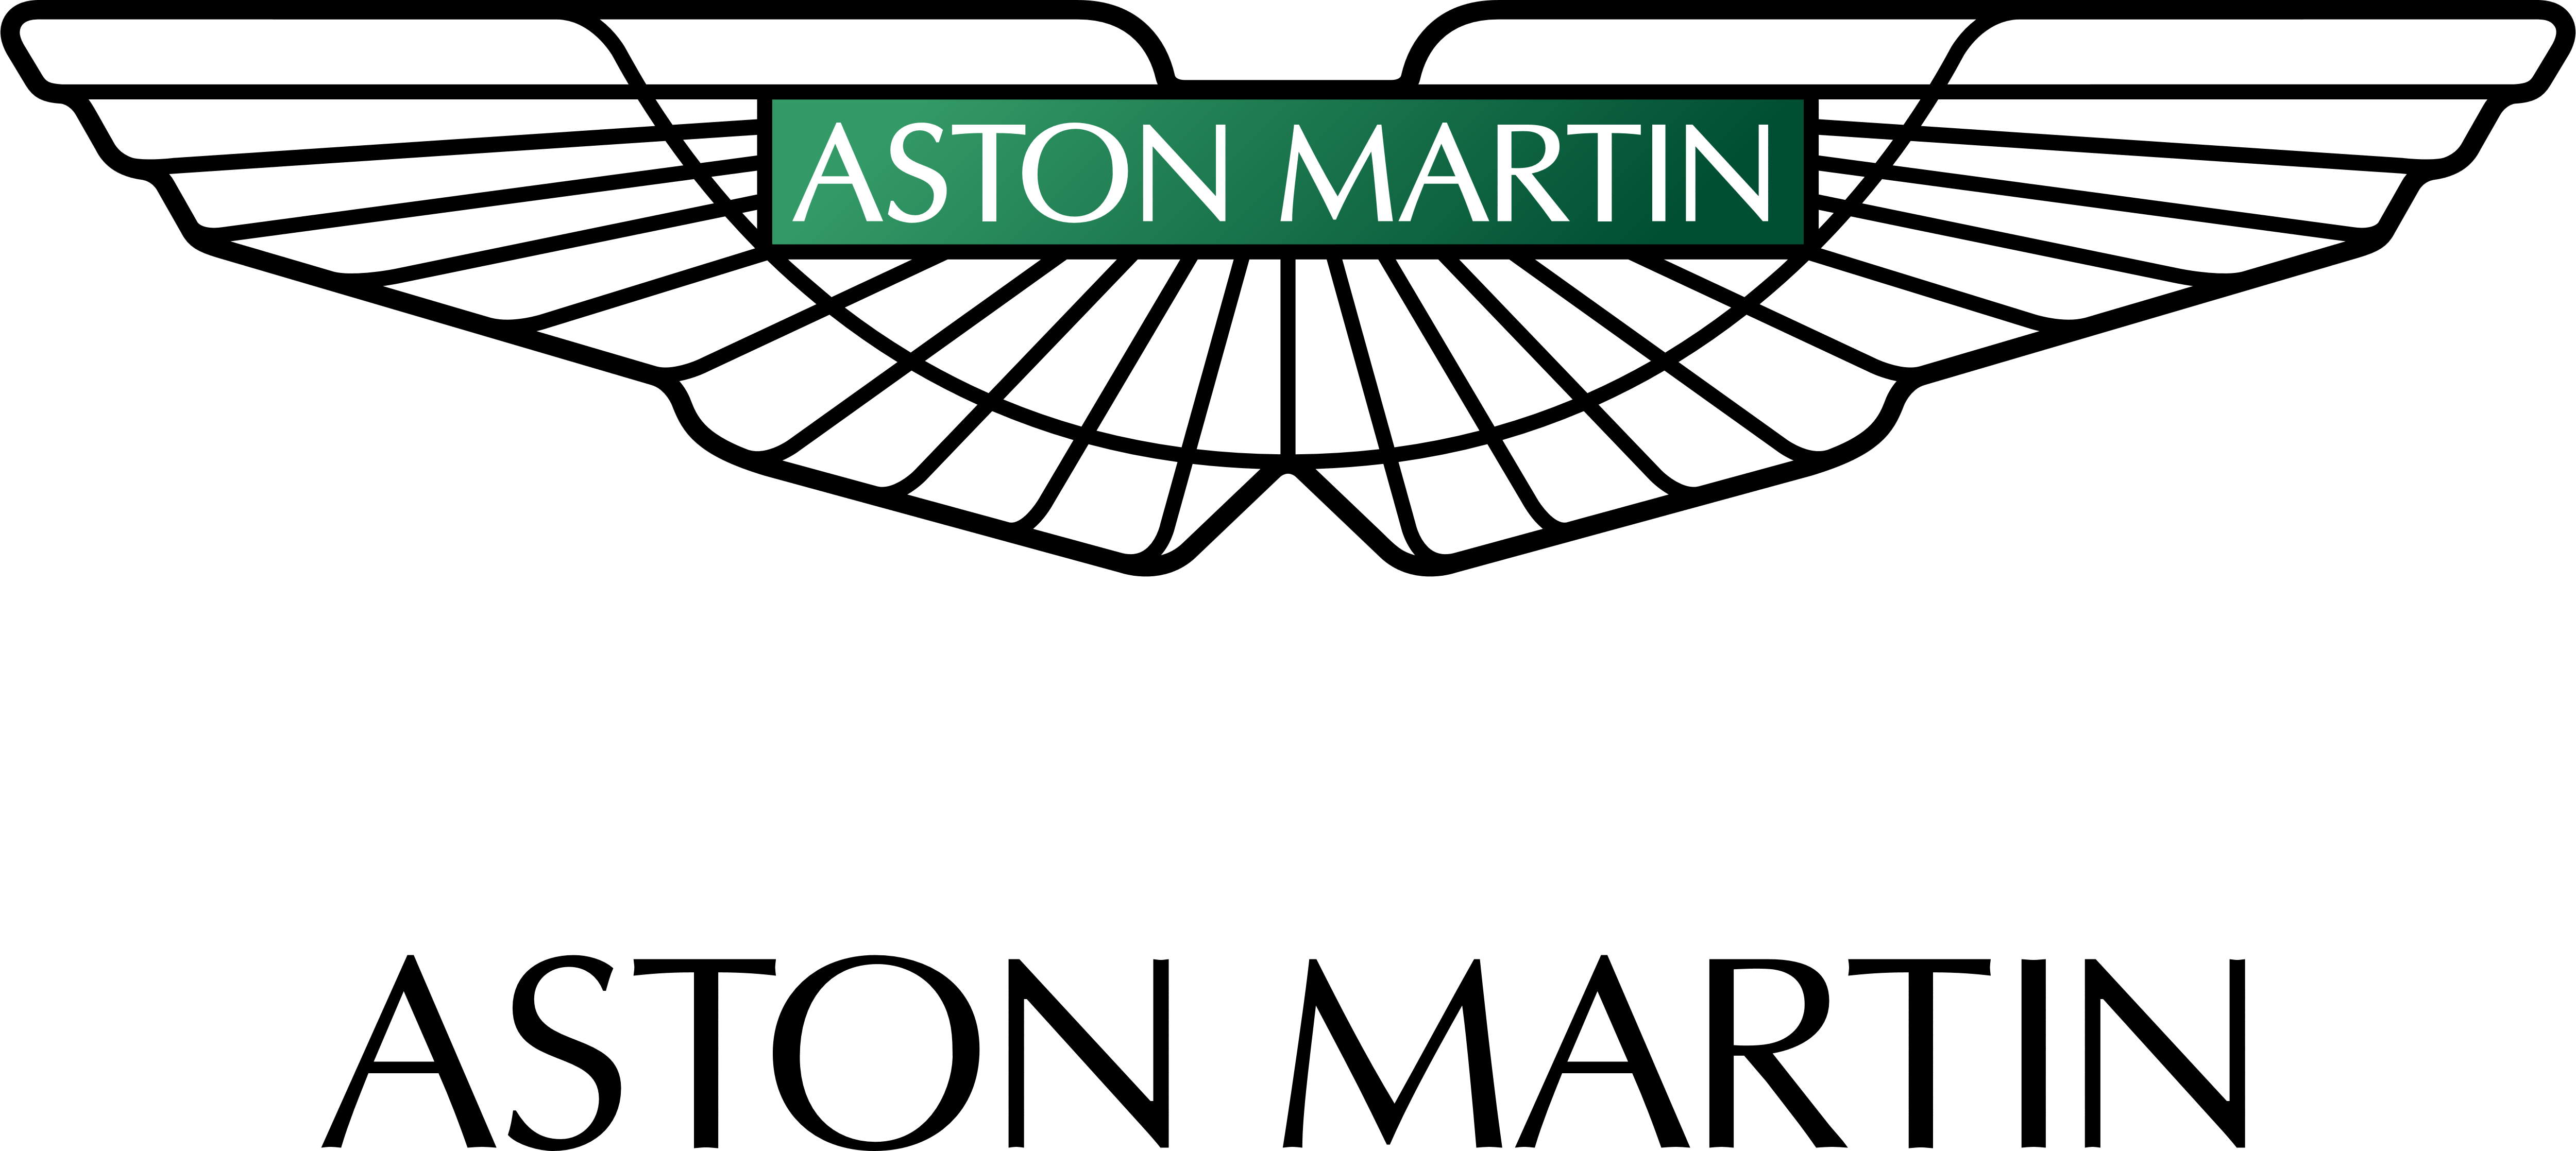 Aston Martin – Logos Download